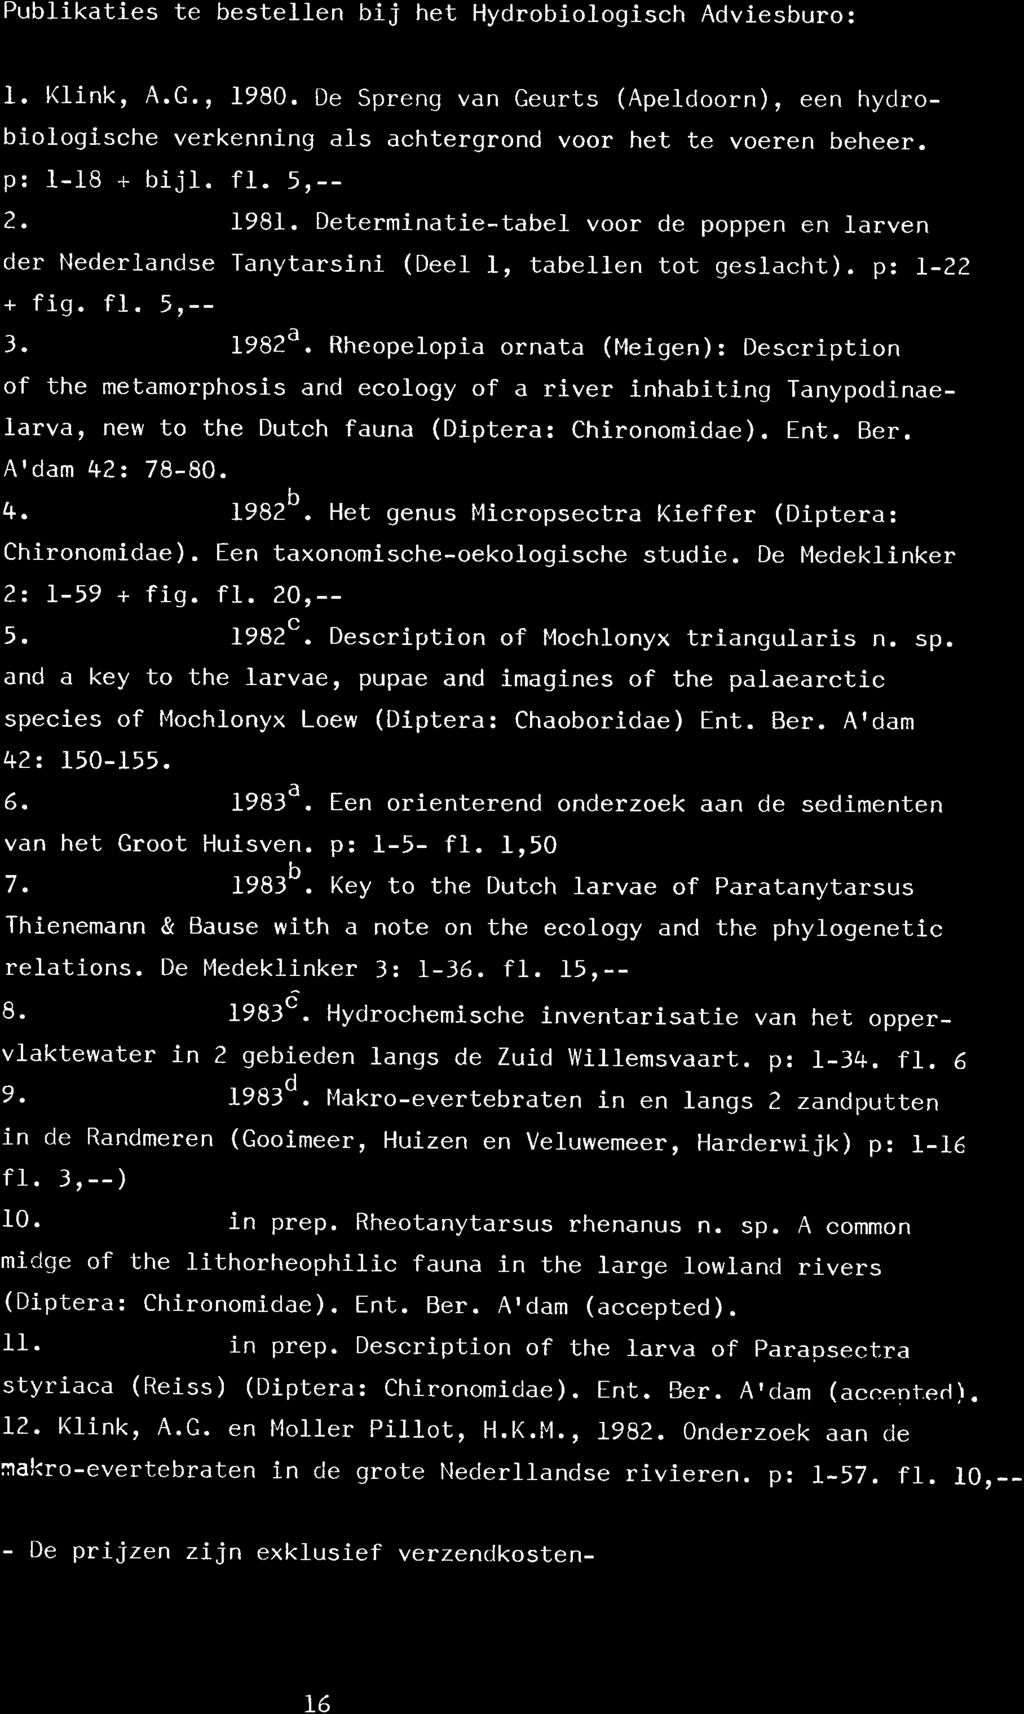 Publikaties te bestellen bij het HydrobioJ_ogisch Adviesburo: l-. t(ink, 4.G., 1980. De Spreng van Geurts (ApeJ.doorn), een hyclrobiorogische verkenning als achtergrond voor het te voeren beheer.